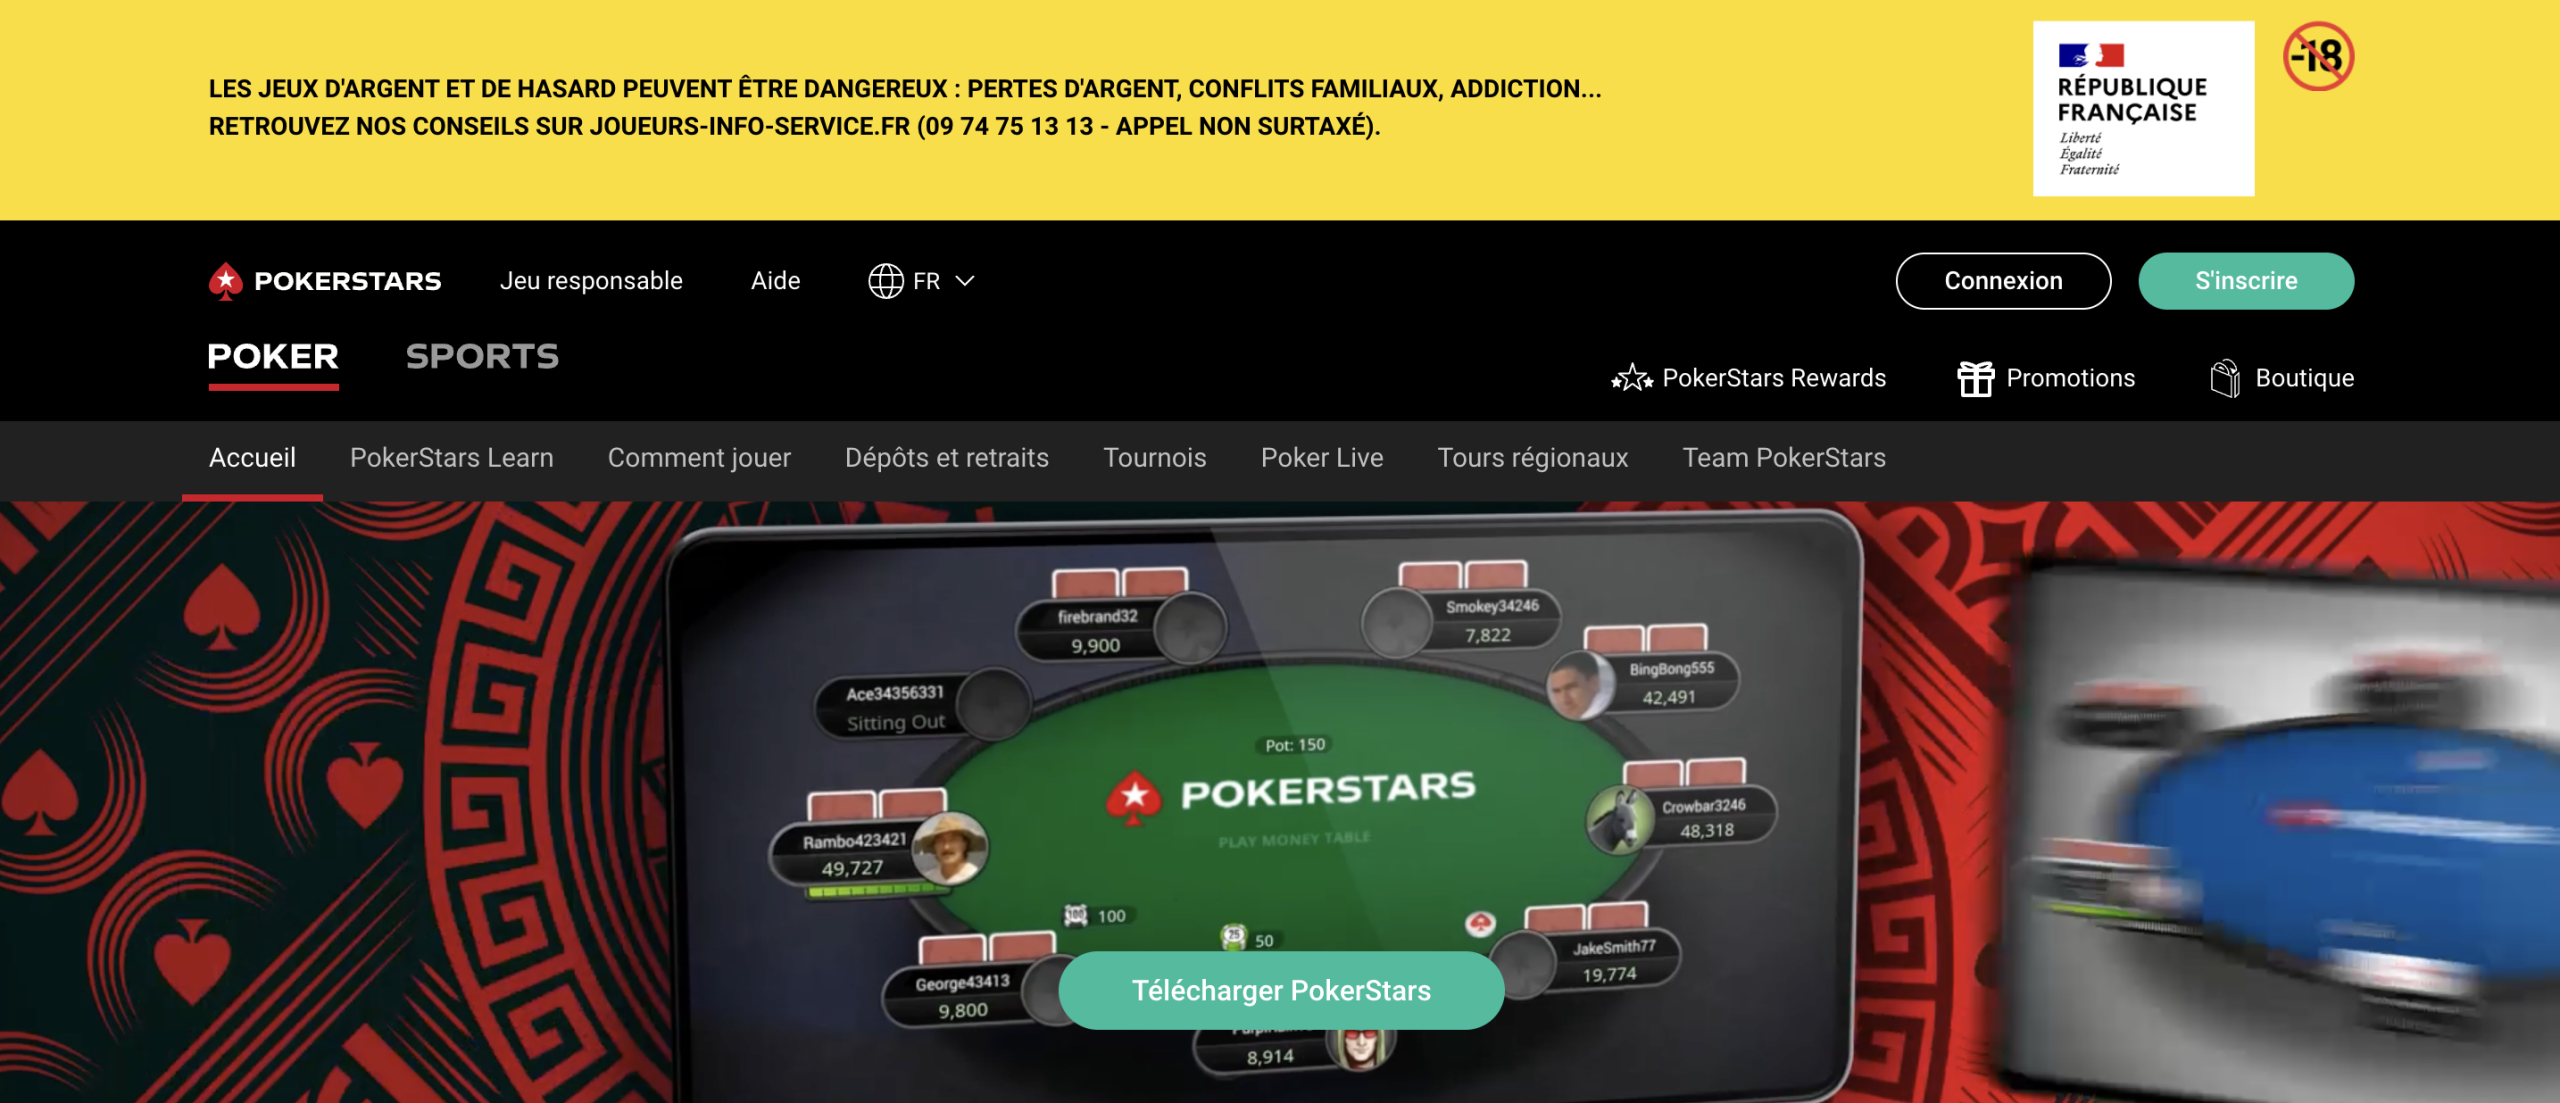 Pokerstars - Le leader mondial du poker en ligne